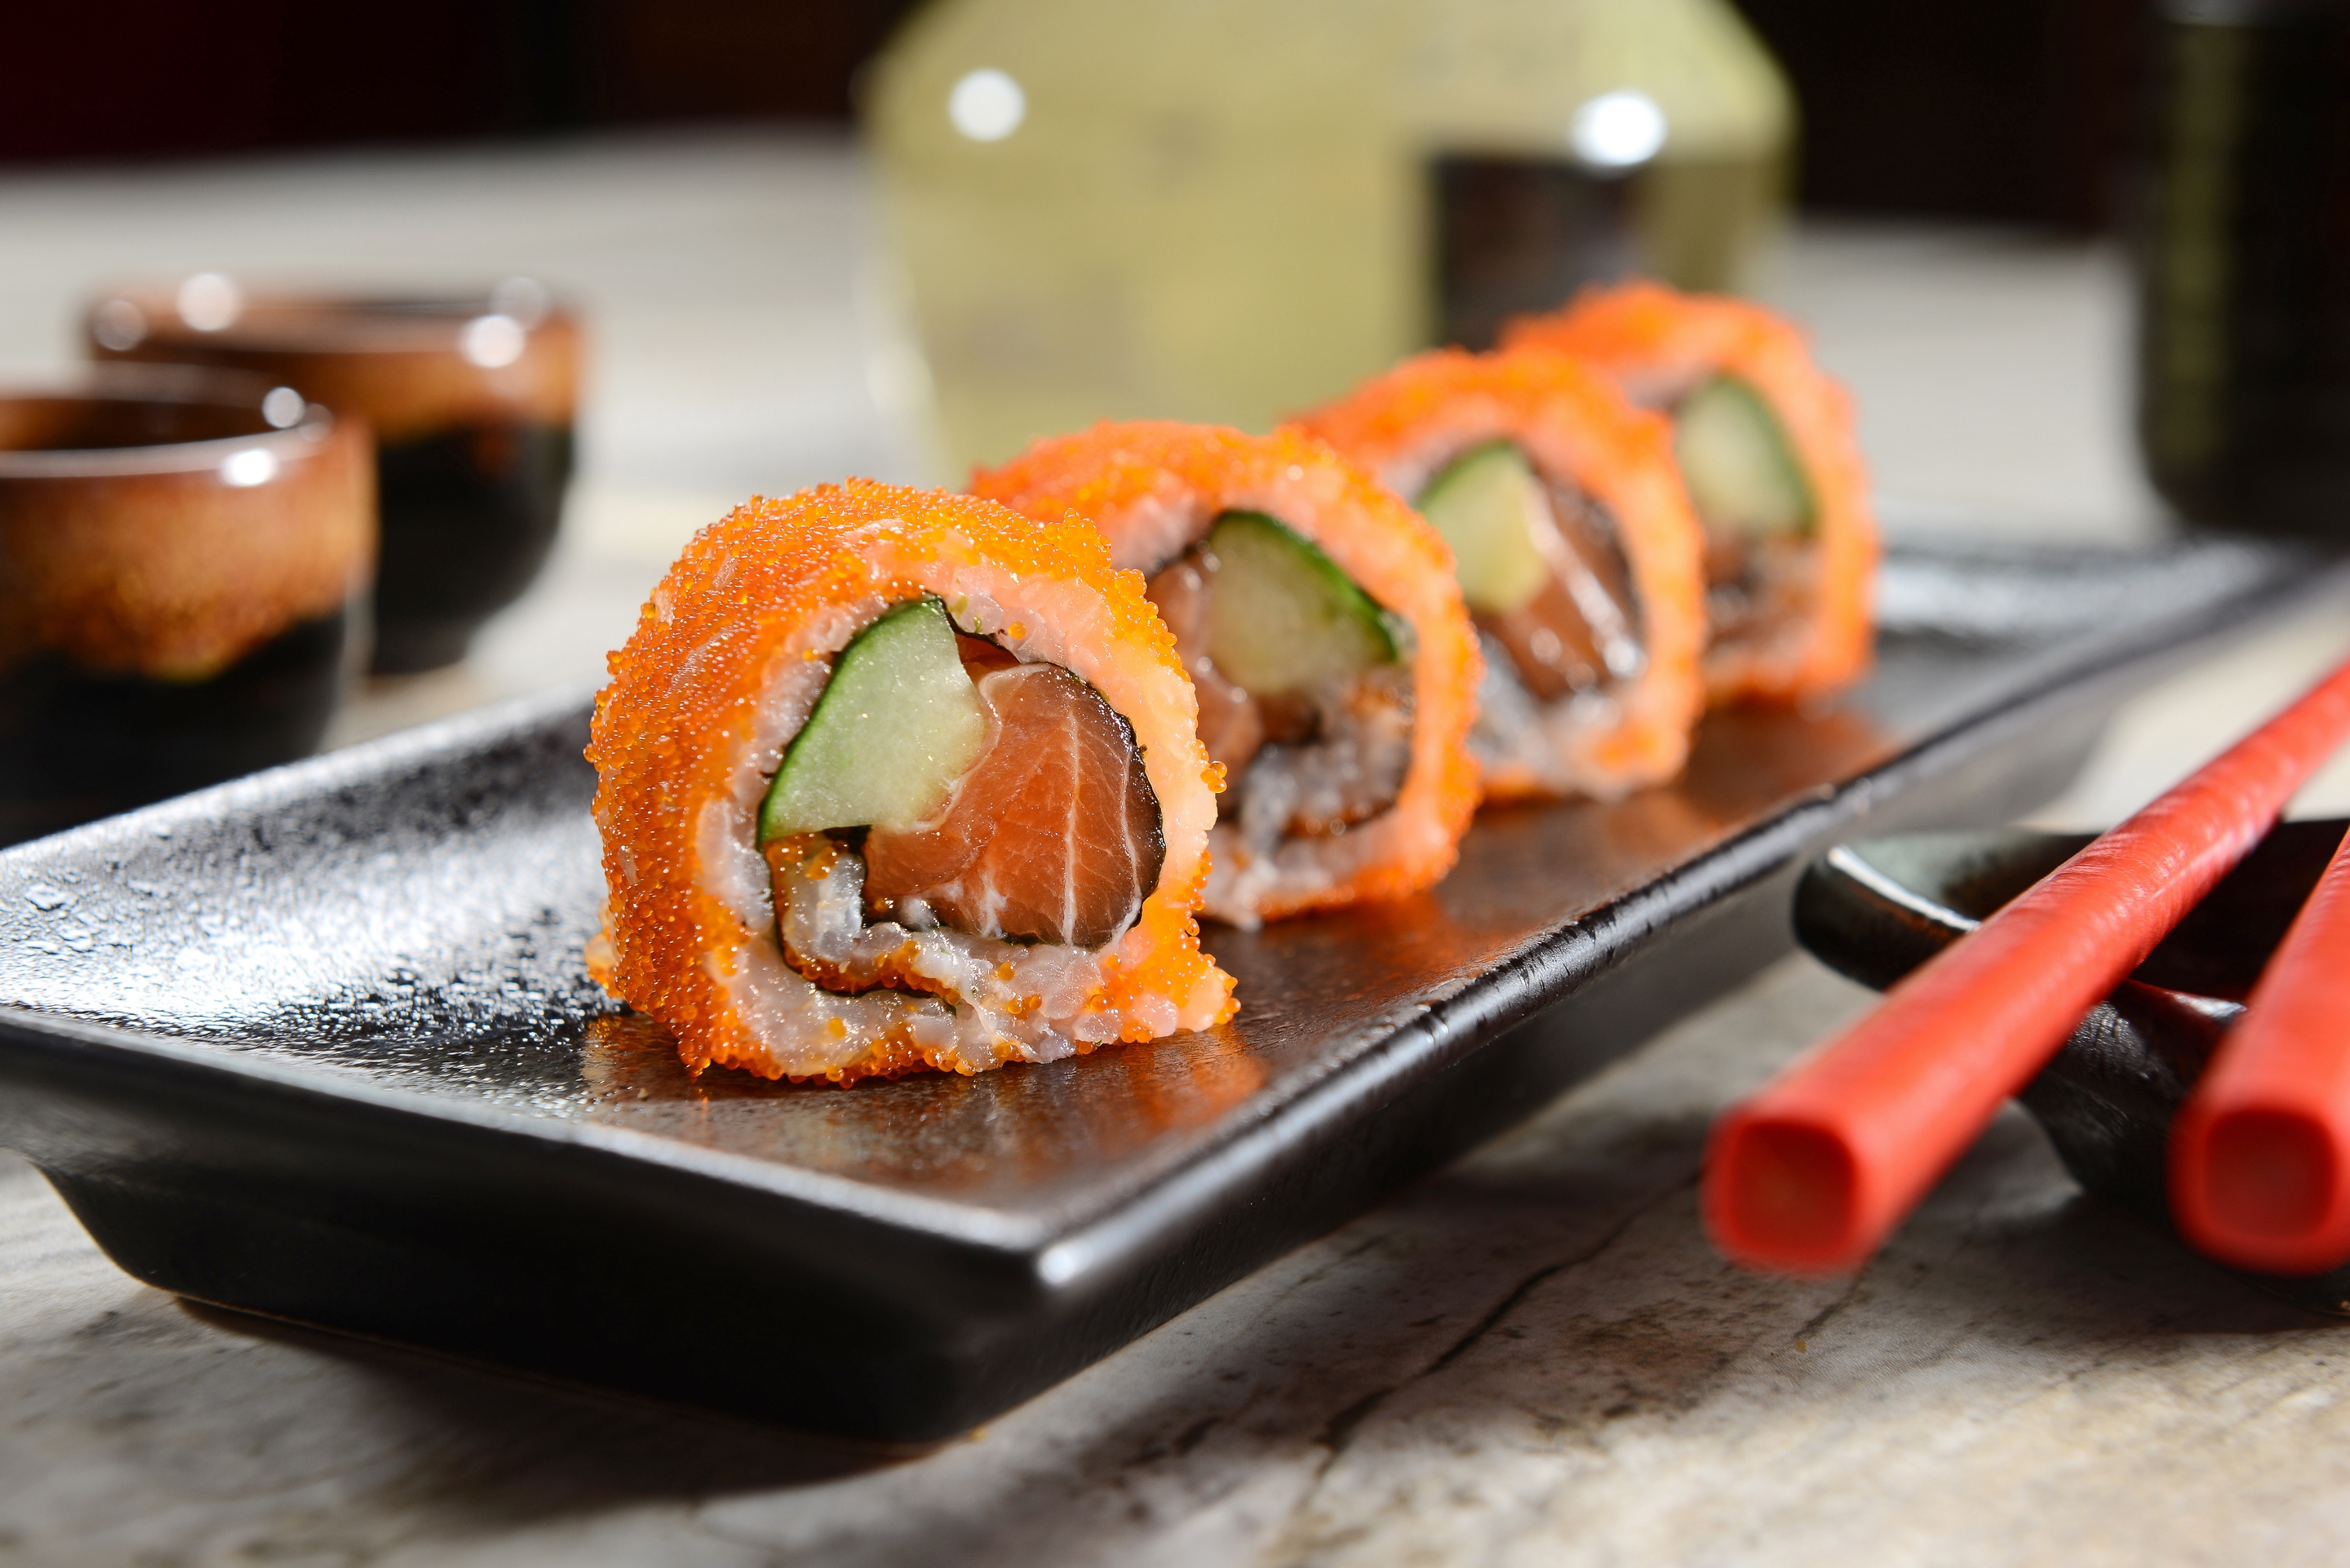 еда рыба суши роллы япония японская кухня food fish sushi rolls Japan Japanese kitchen скачать